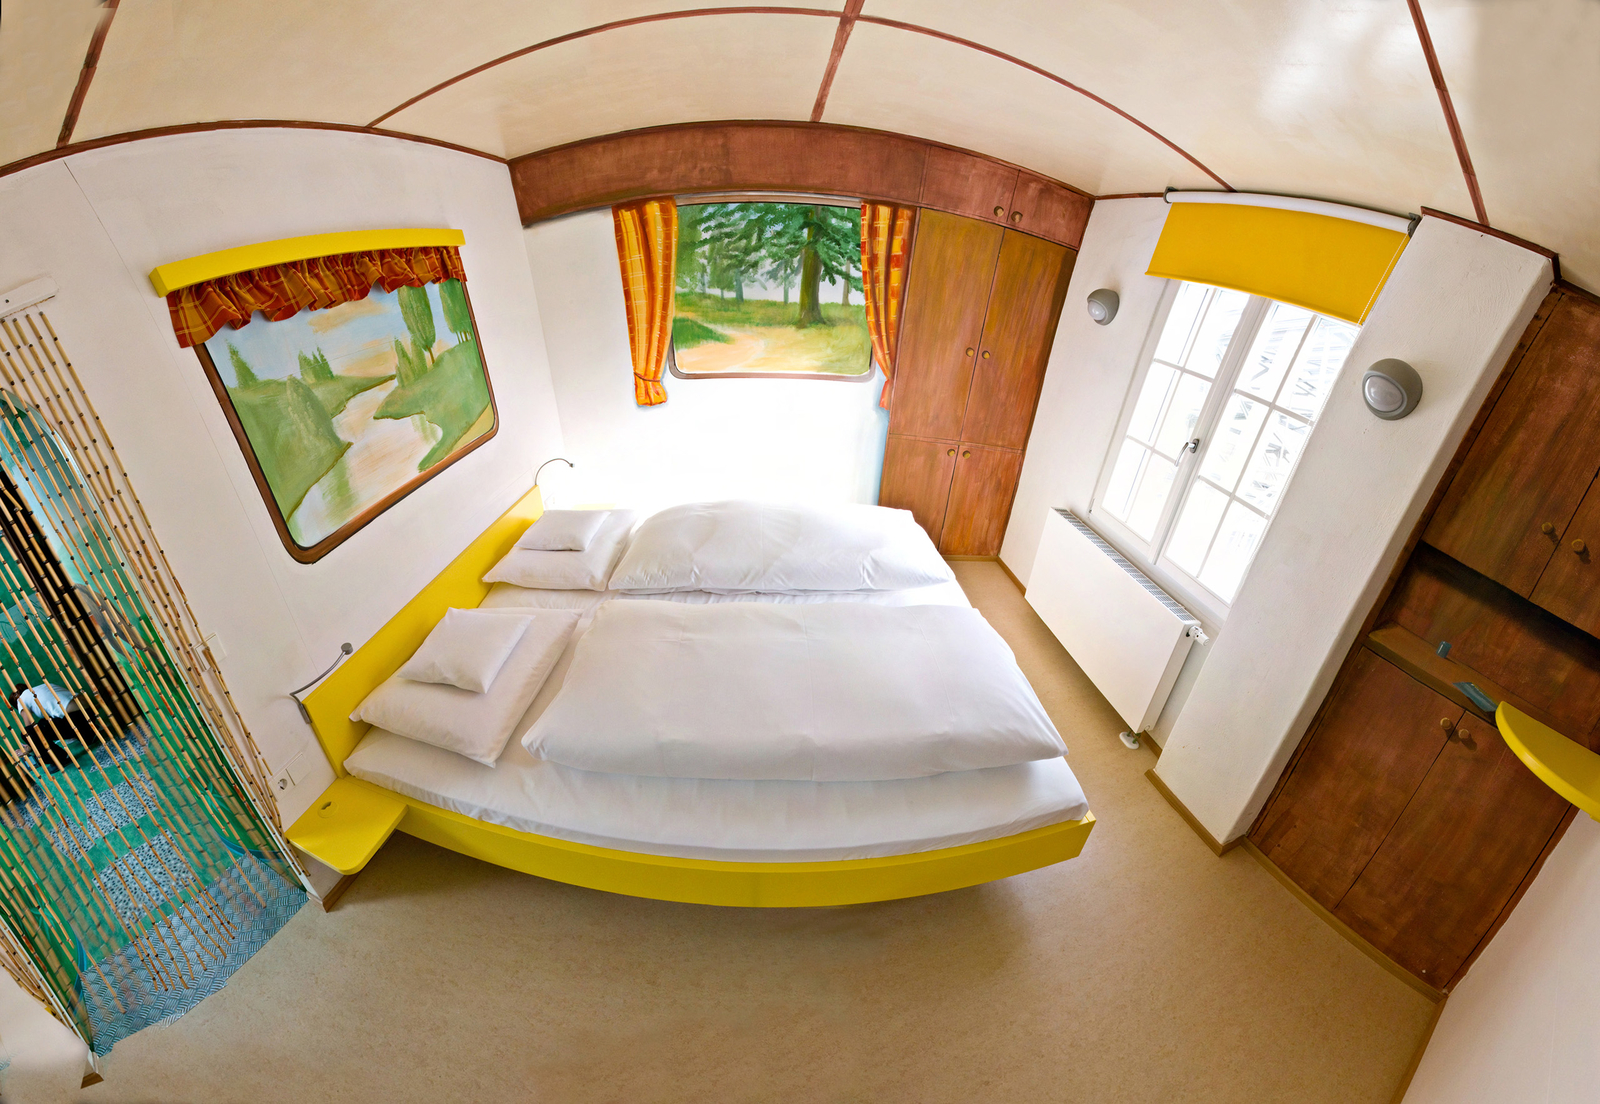 Camping Themenzimmer eingerichtet mit einem gelben Doppelbett und aufgemalten Fenstern, die die Landschaft zeigen